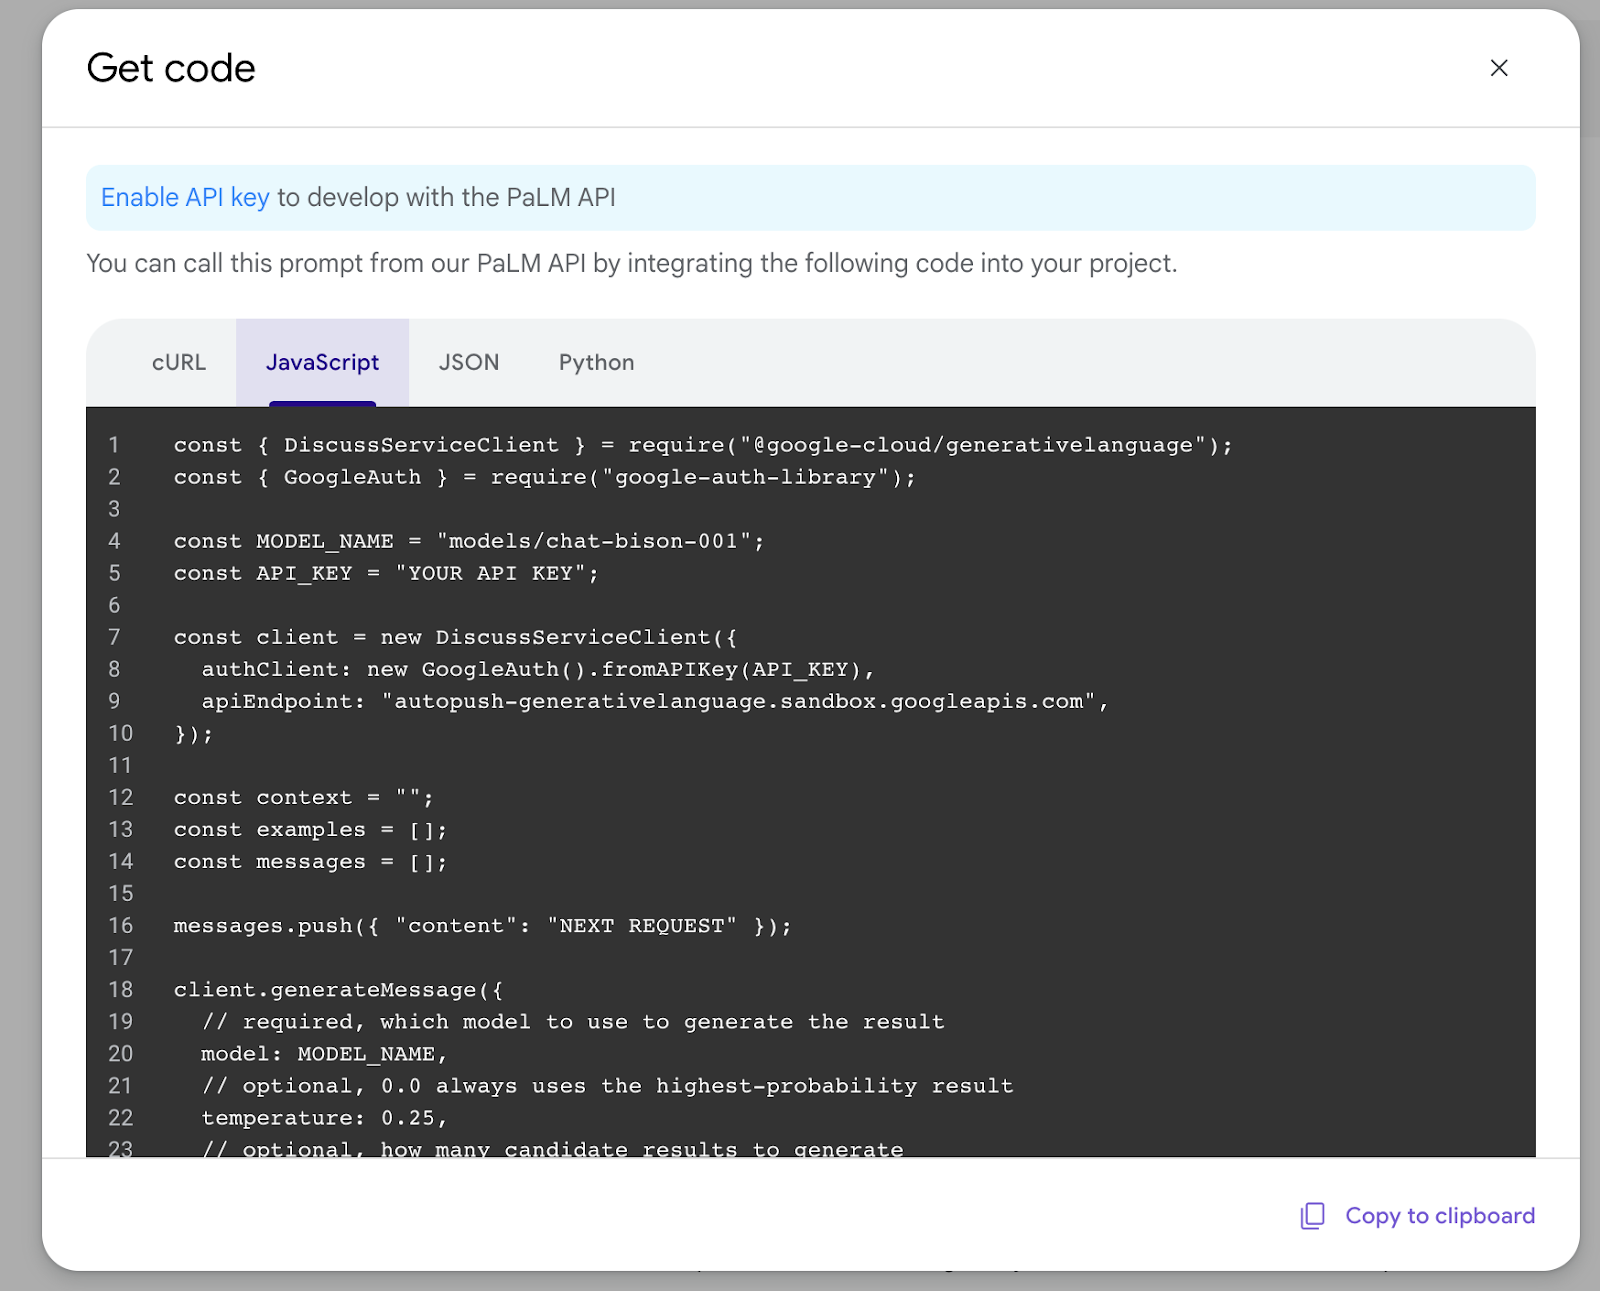 一个对话框，显示由 Makersuite 生成的代码。用户可以选择使用 cURL、JavaScript 或 Python 库，或者以 JSON 格式检索提示信息。